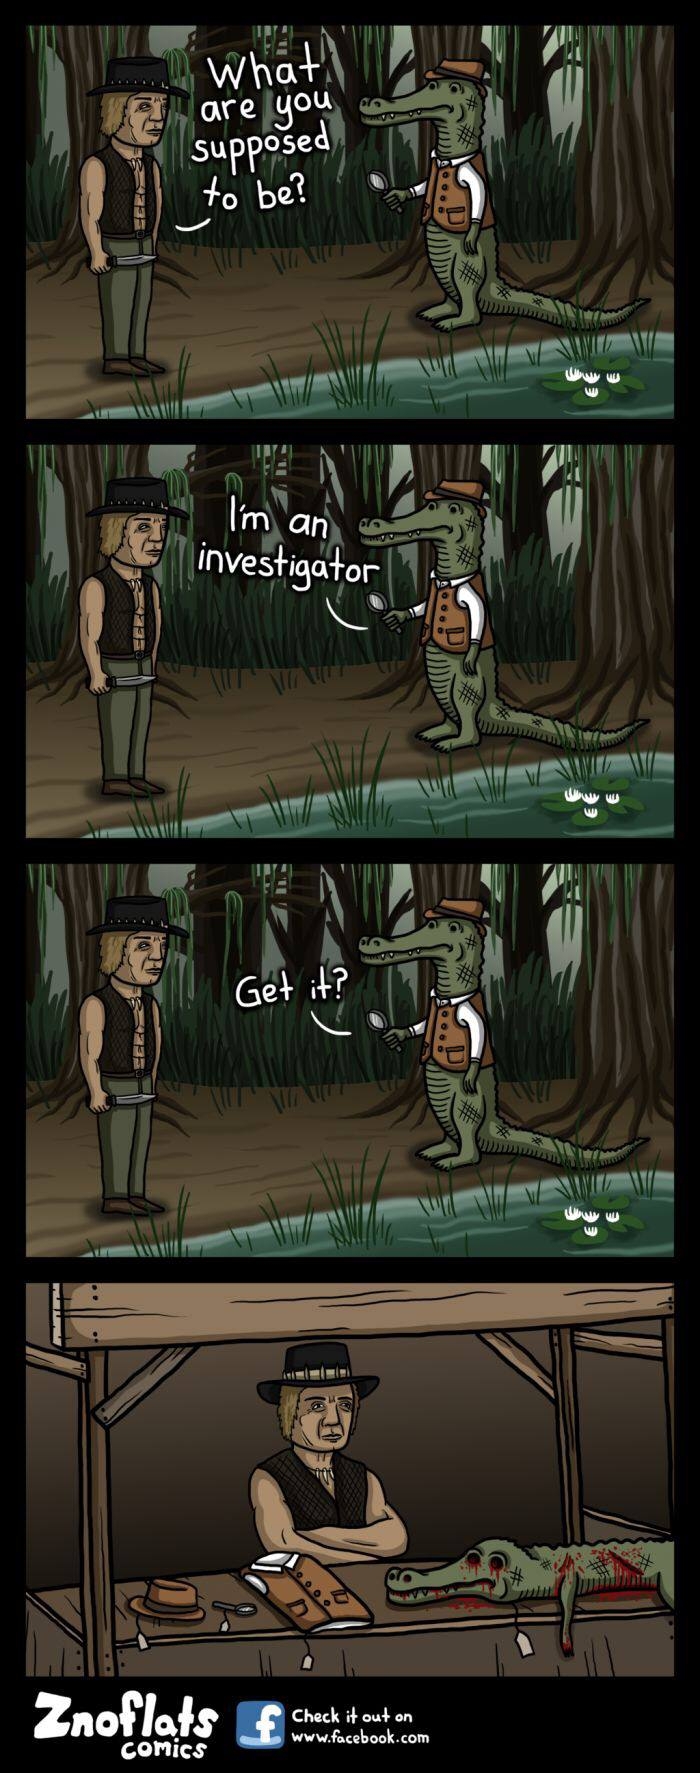 Investigator get it